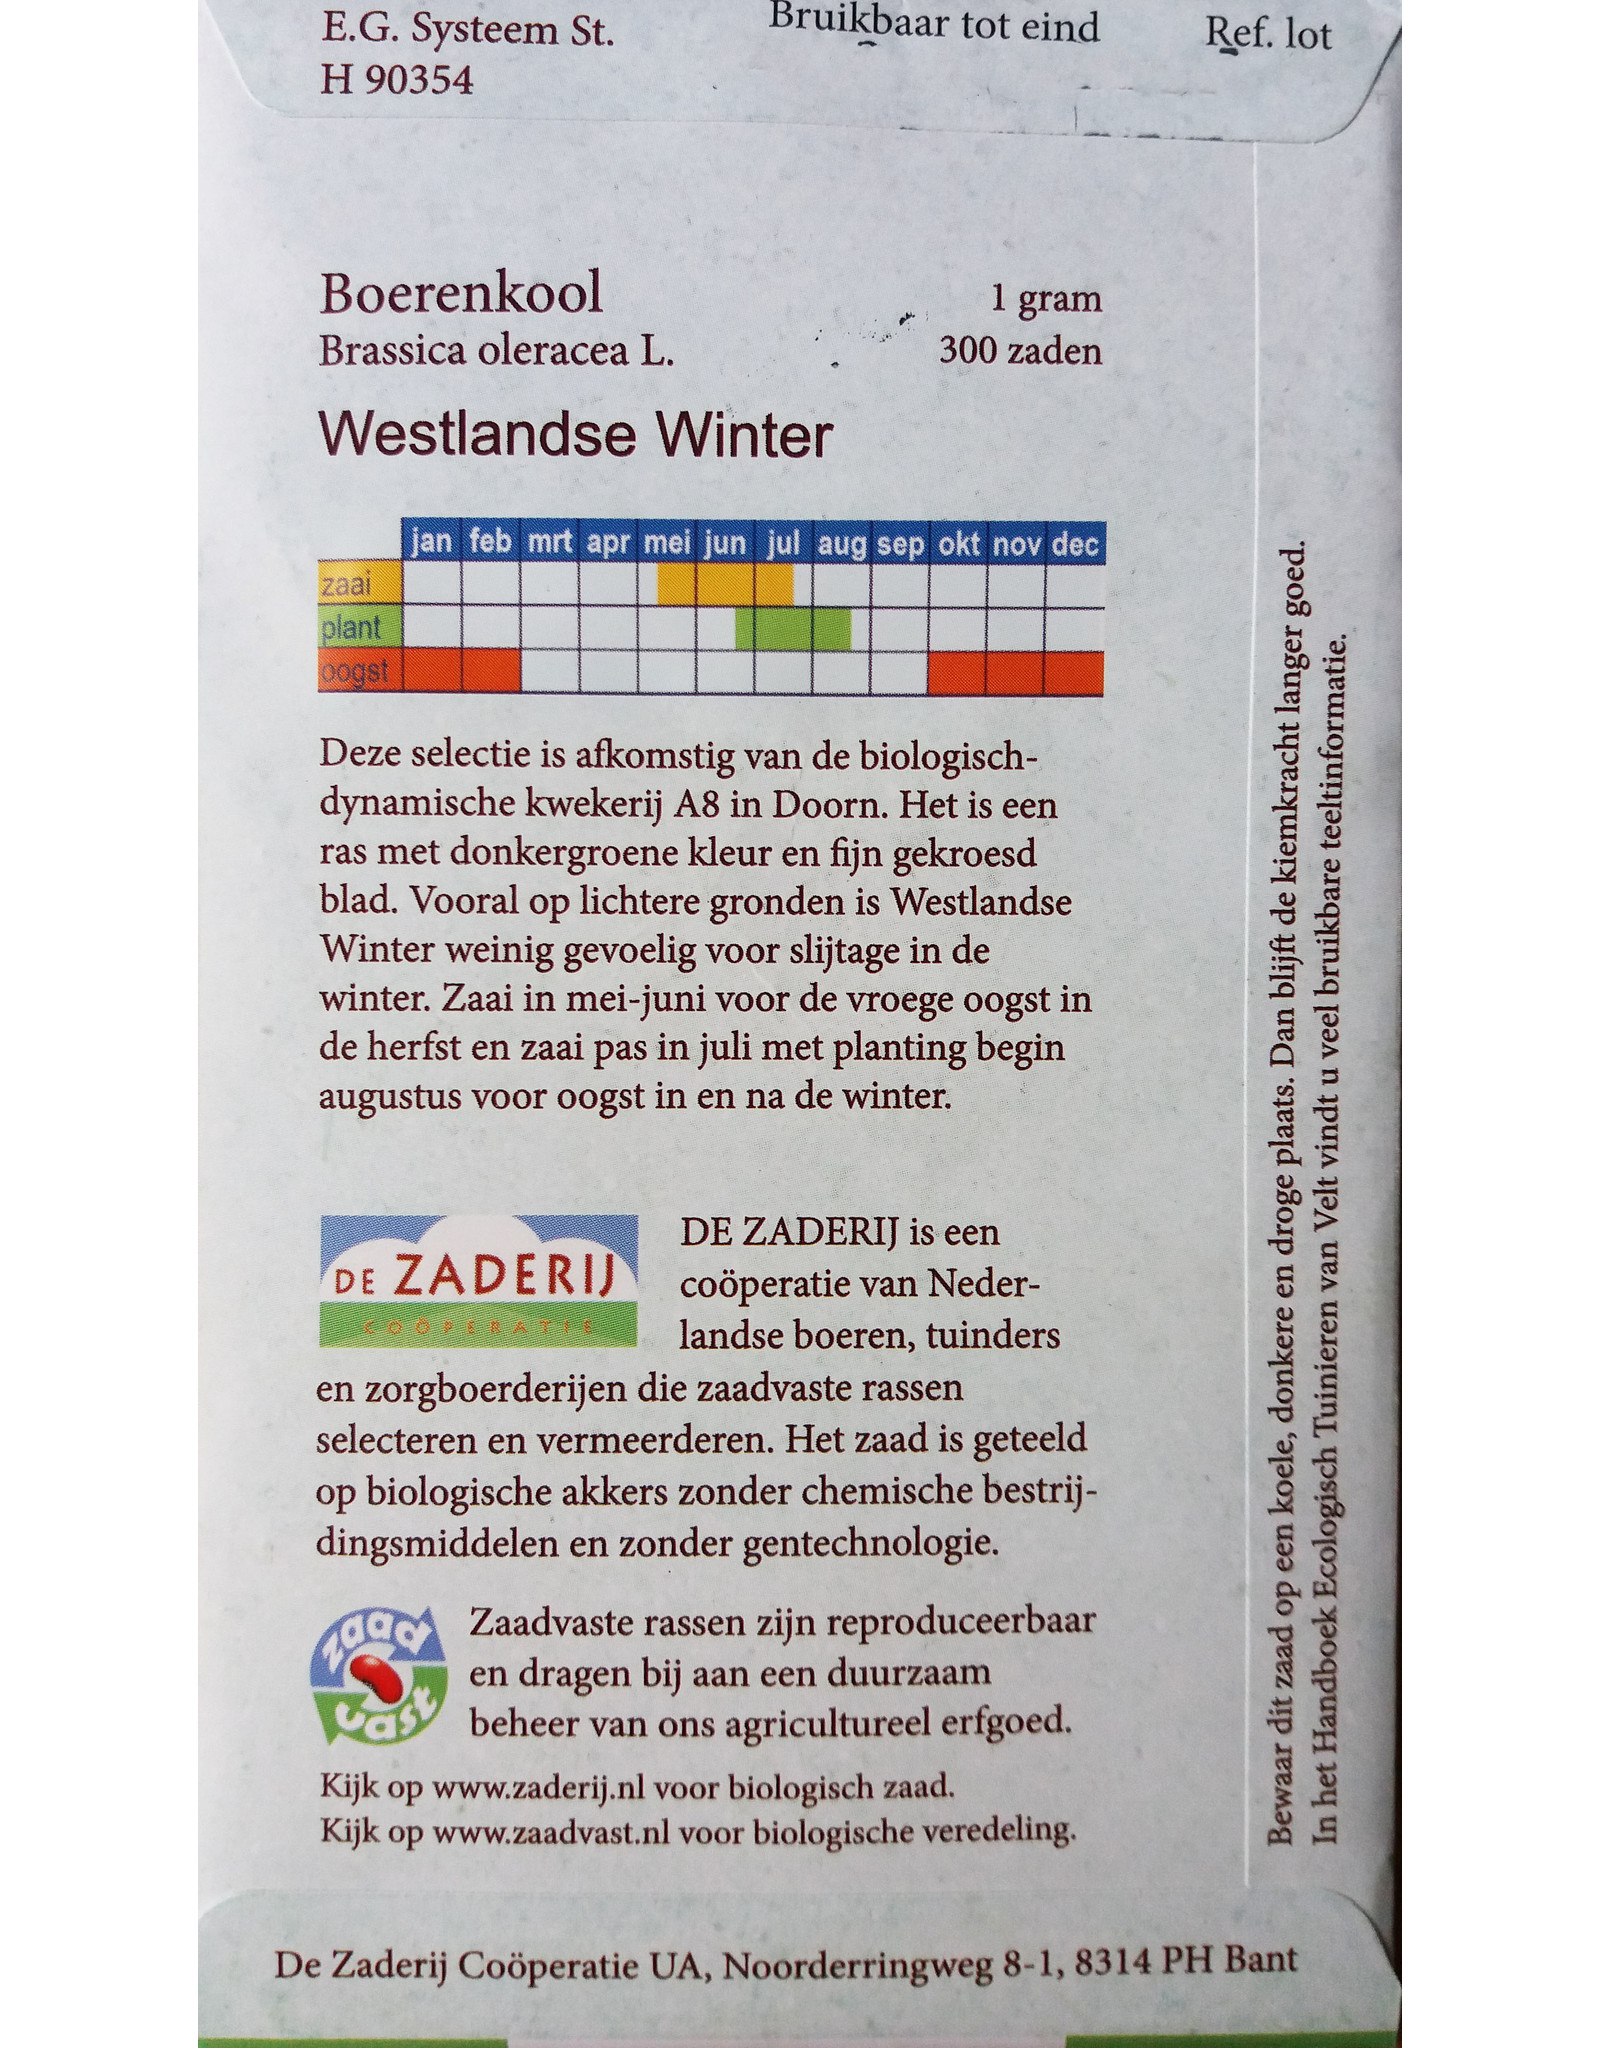 Boerenkool Westlandse Winter 'selectie A8' uit Doorn